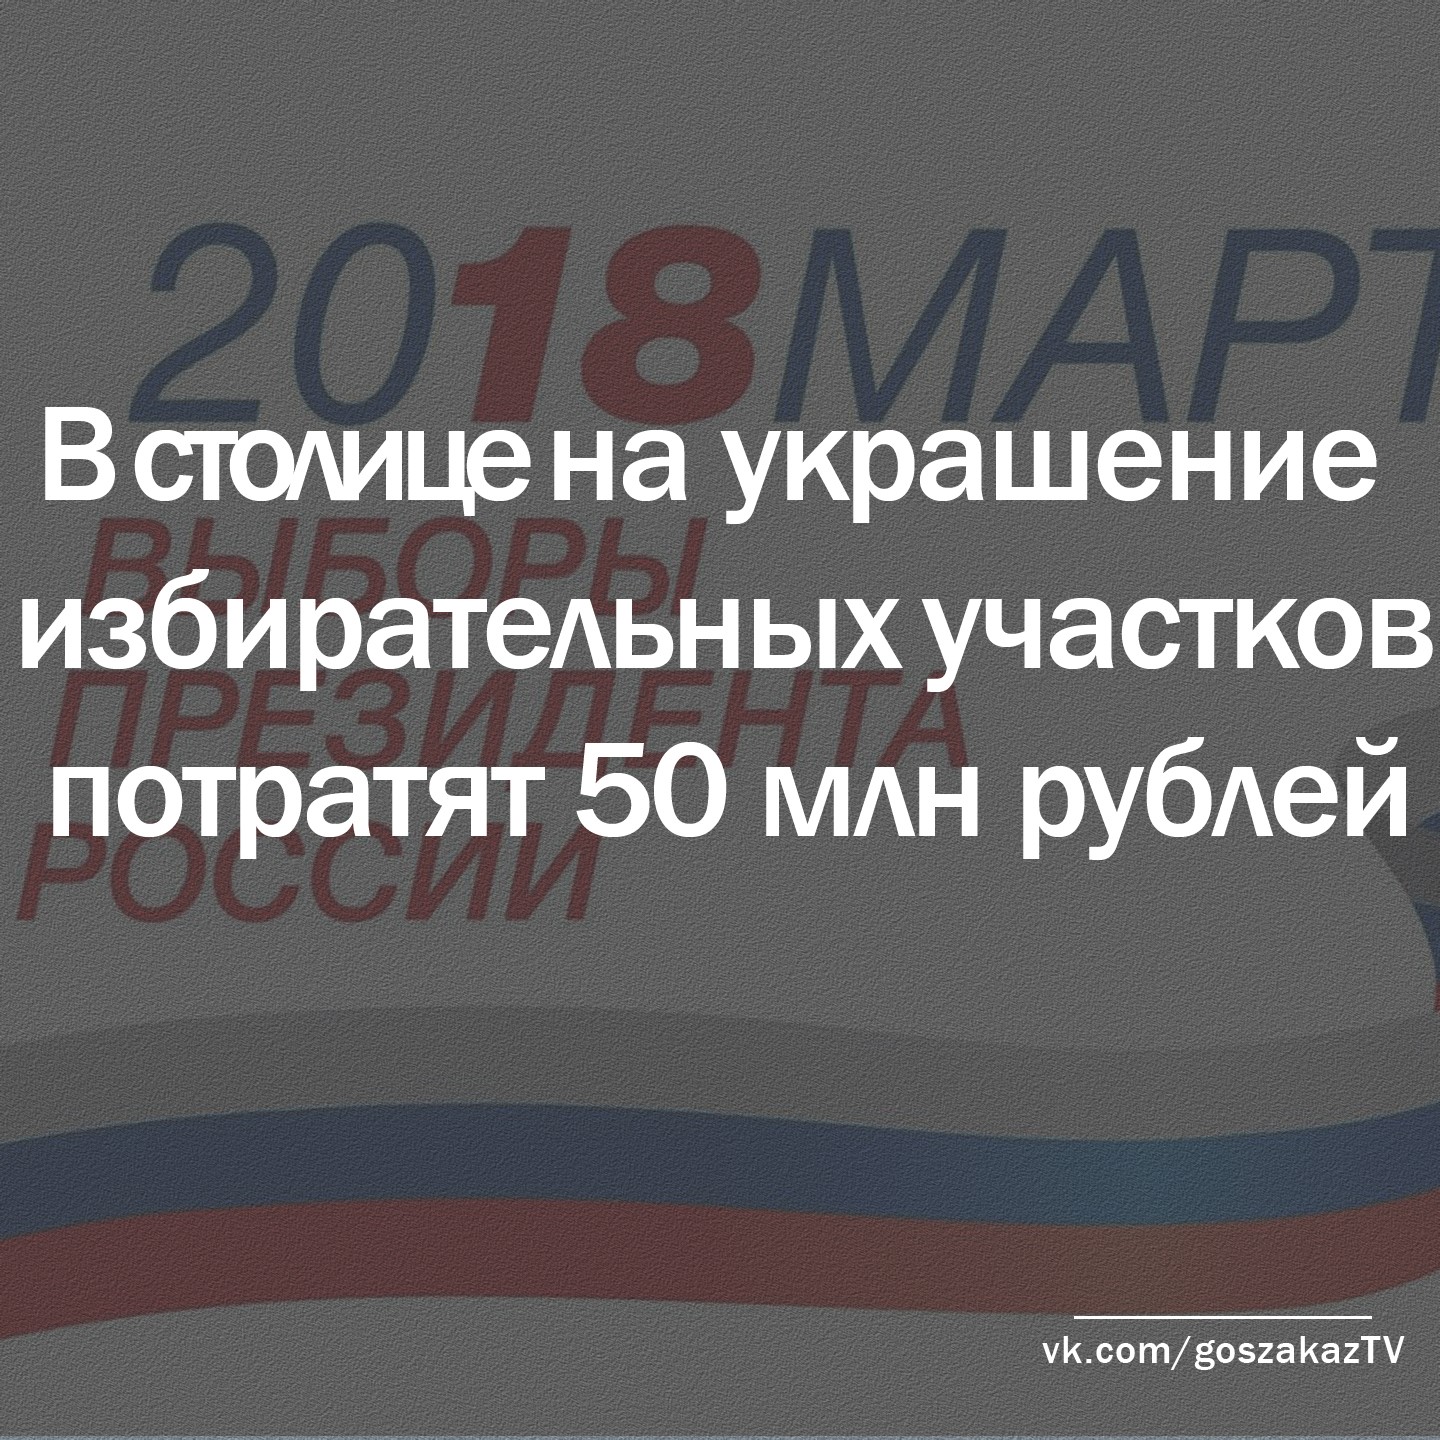 В Москве намерены украсить предвыборные участки за 50 миллионов рублей